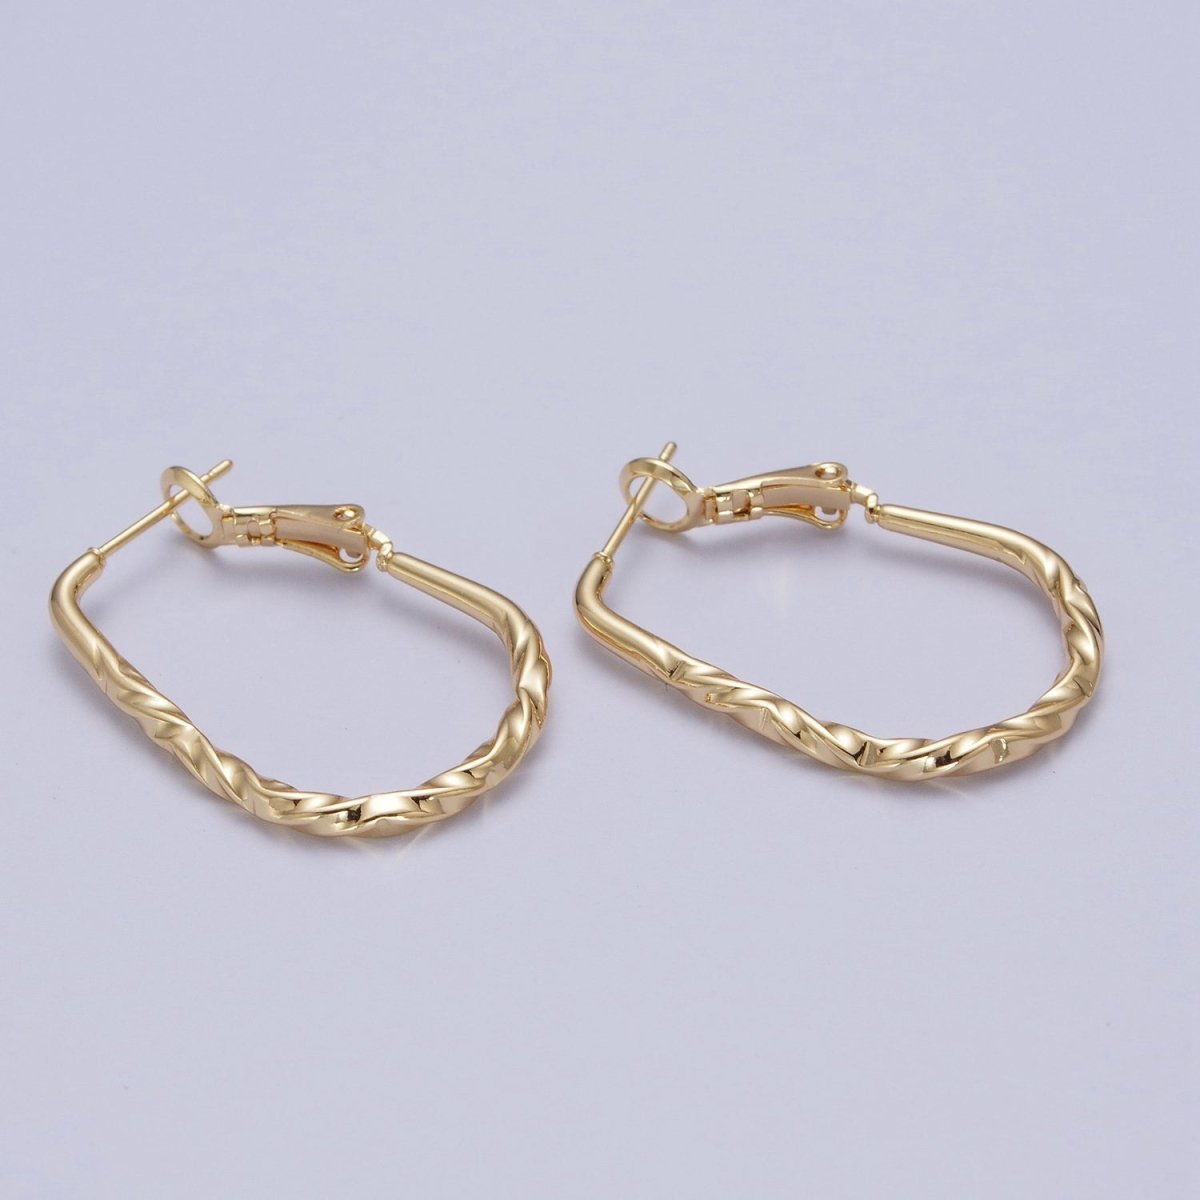 Hammered Hoop Earrings - Minimalist Hoop Earrings - Modern Hoop Earrings - Gold Oval Hoop Earrings Q-342 - DLUXCA